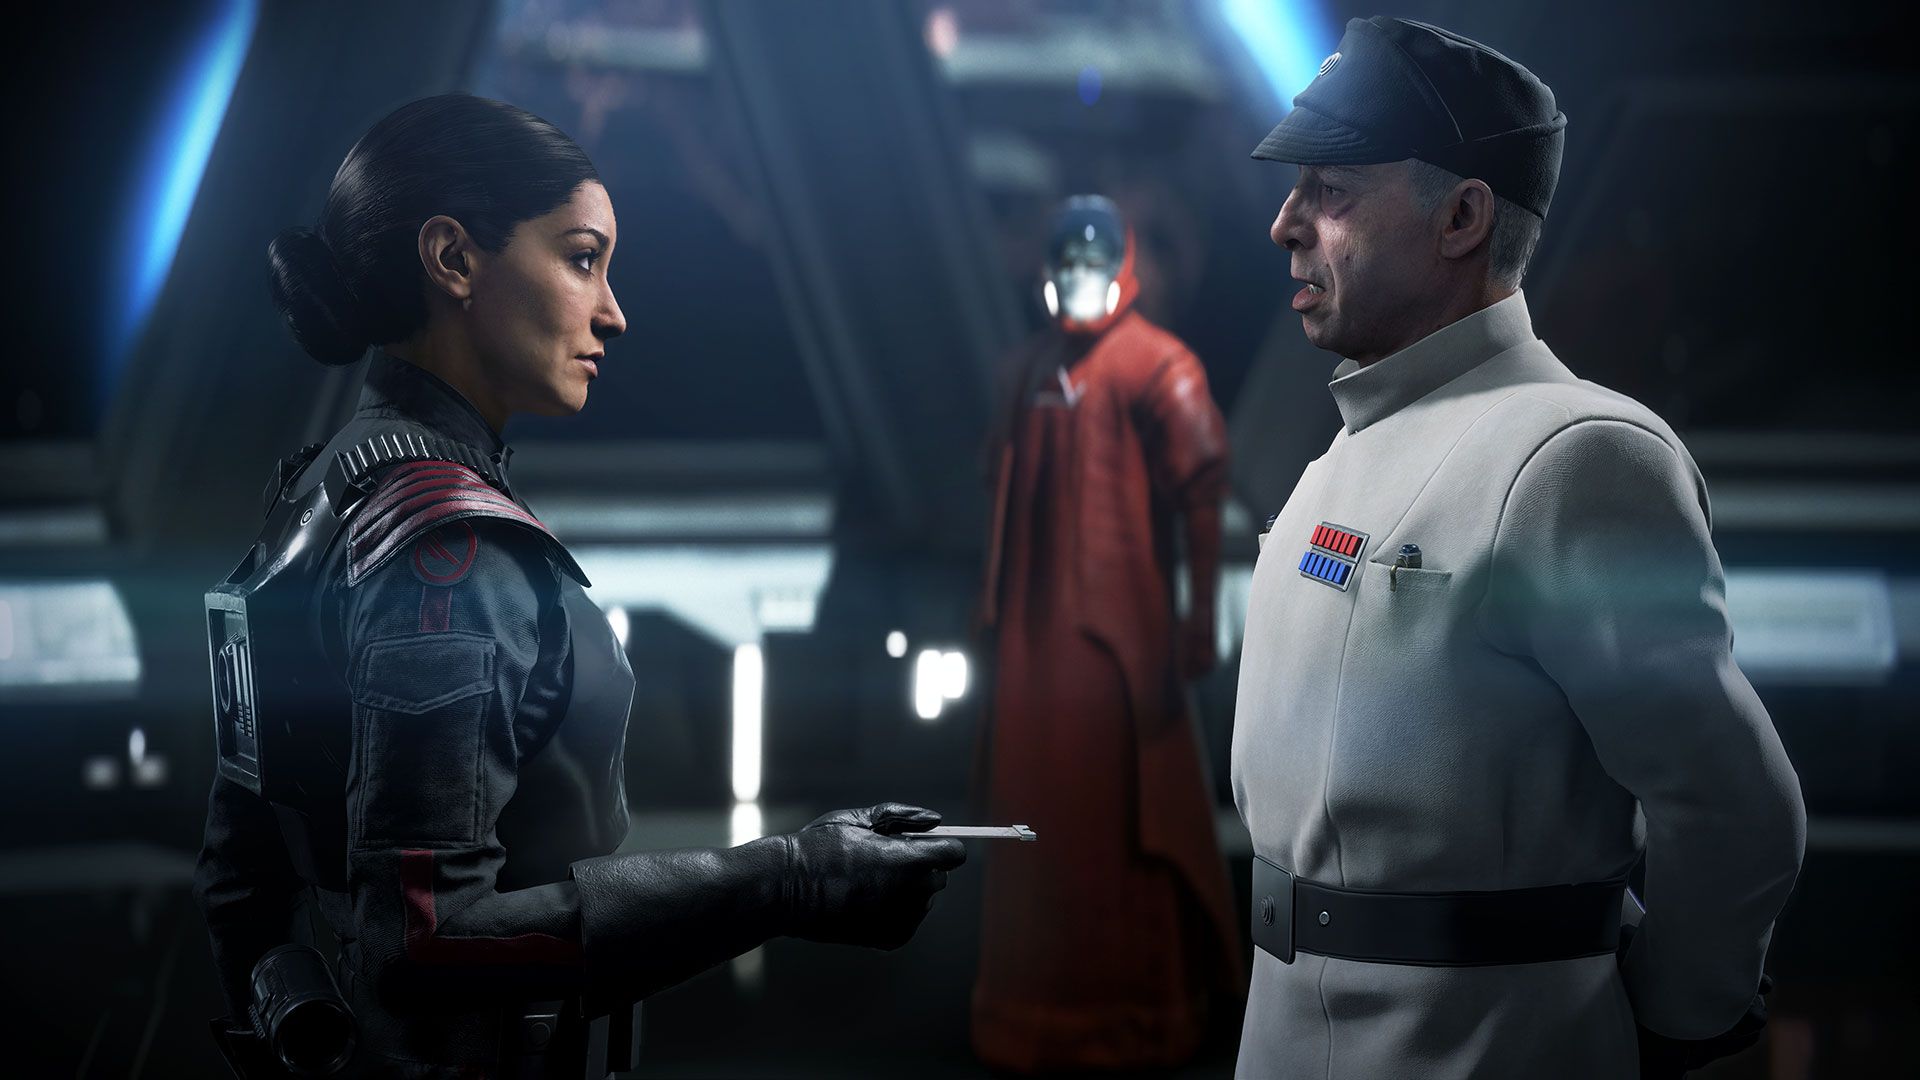 Casetele de pradă Star Wars Battlefront II aduc acțiuni legislative asupra micro-tranzacțiilor prădătoare